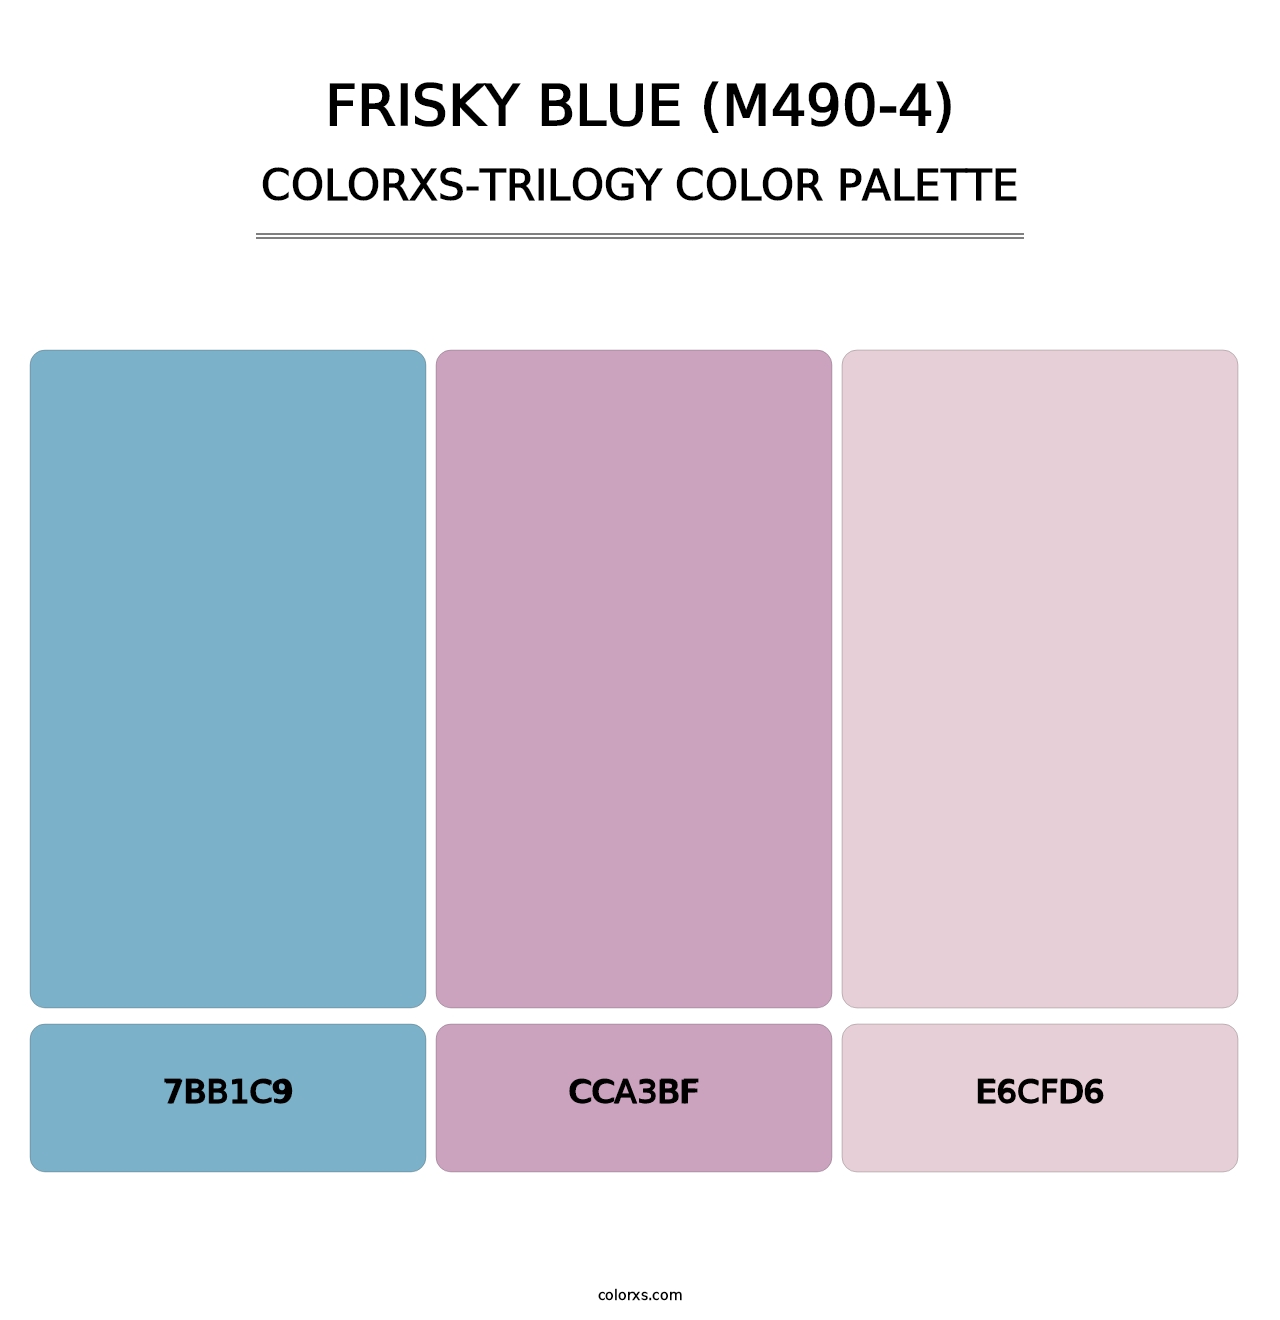 Frisky Blue (M490-4) - Colorxs Trilogy Palette